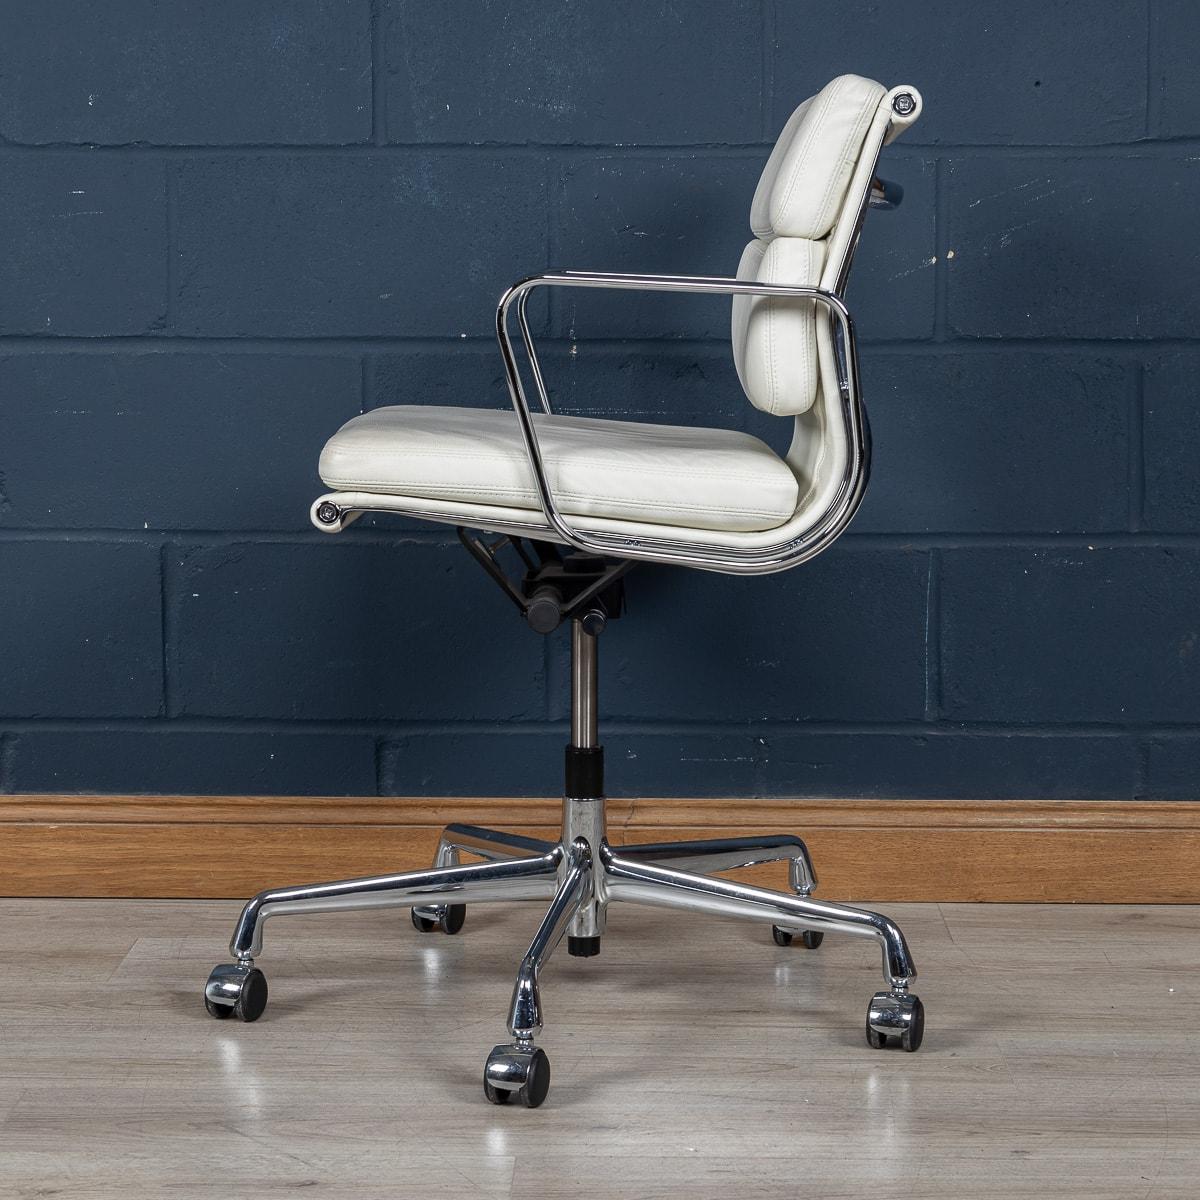 Une superbe chaise Eames de Vitra, de fabrication récente, recouverte d'un délicieux cuir blanc 